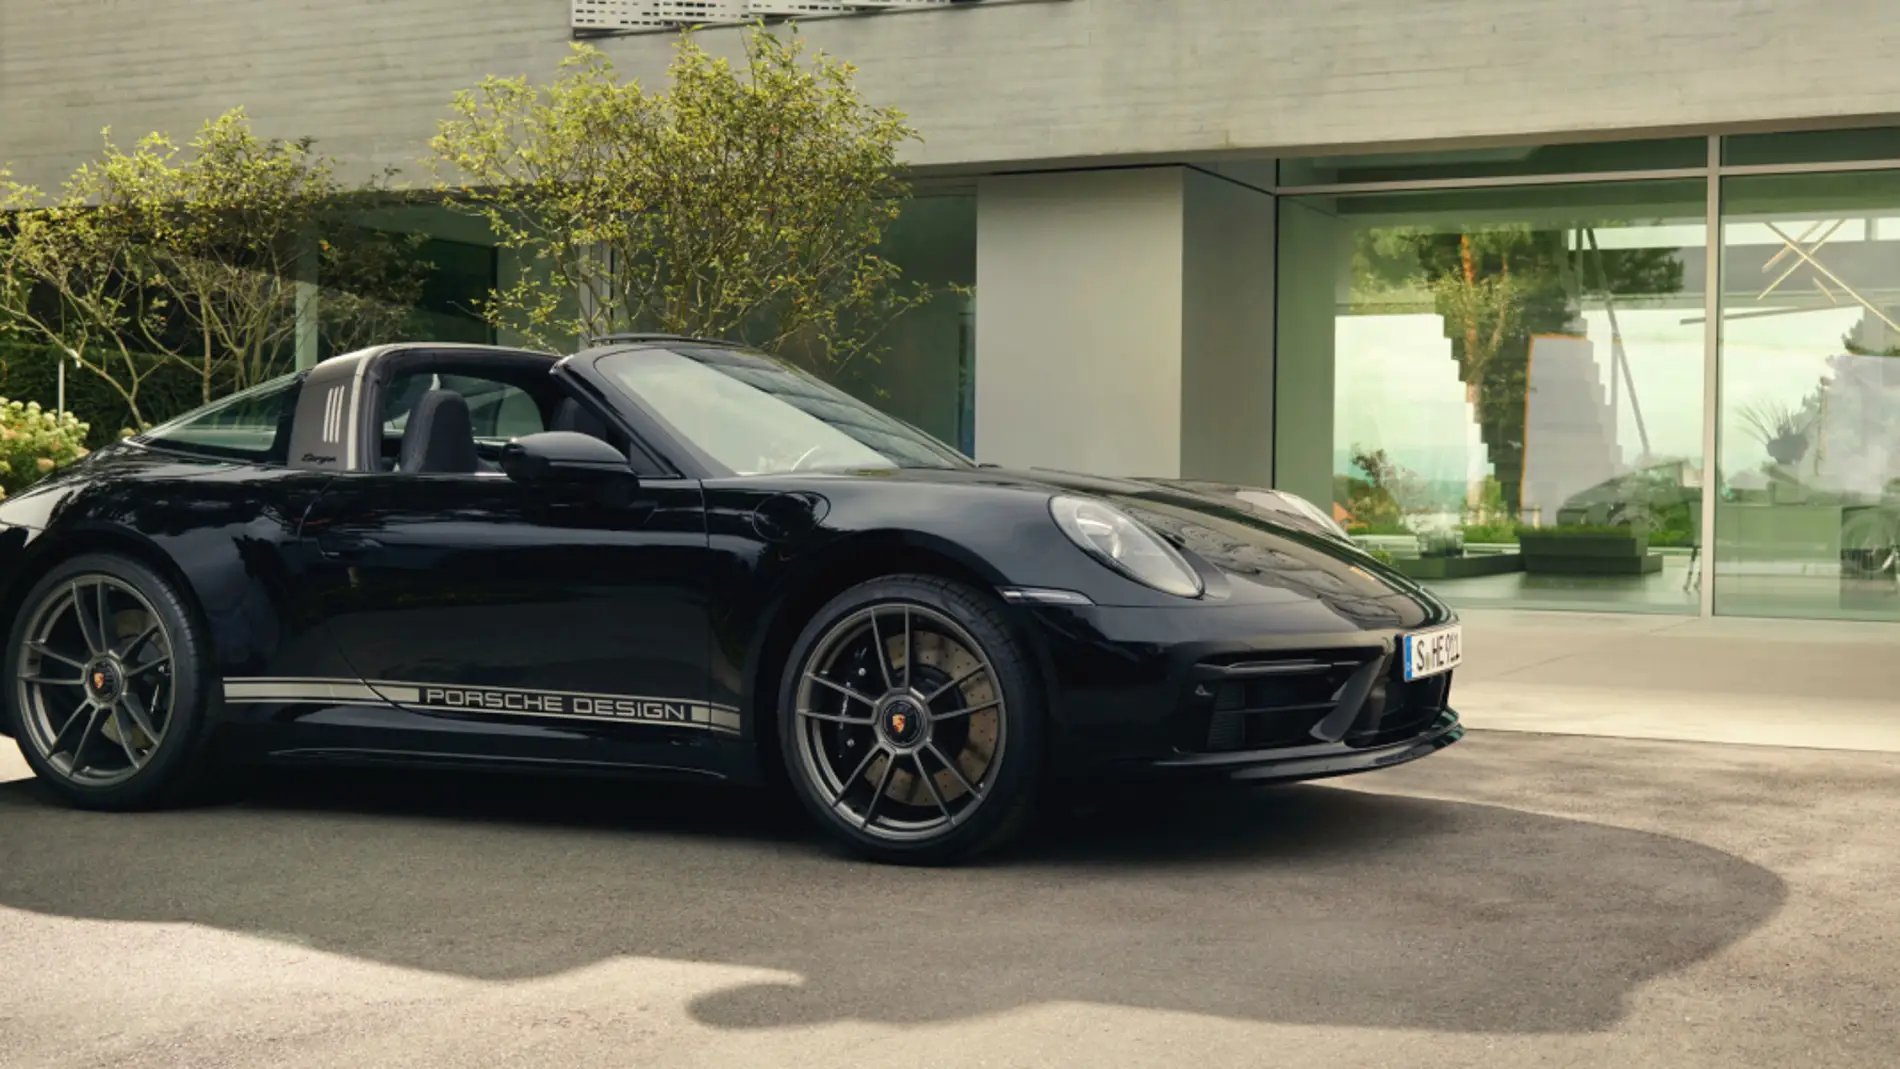 Una edición limitada del Porsche 911 Targa 4 GTS: así celebra sus cincuenta años Porsche Design